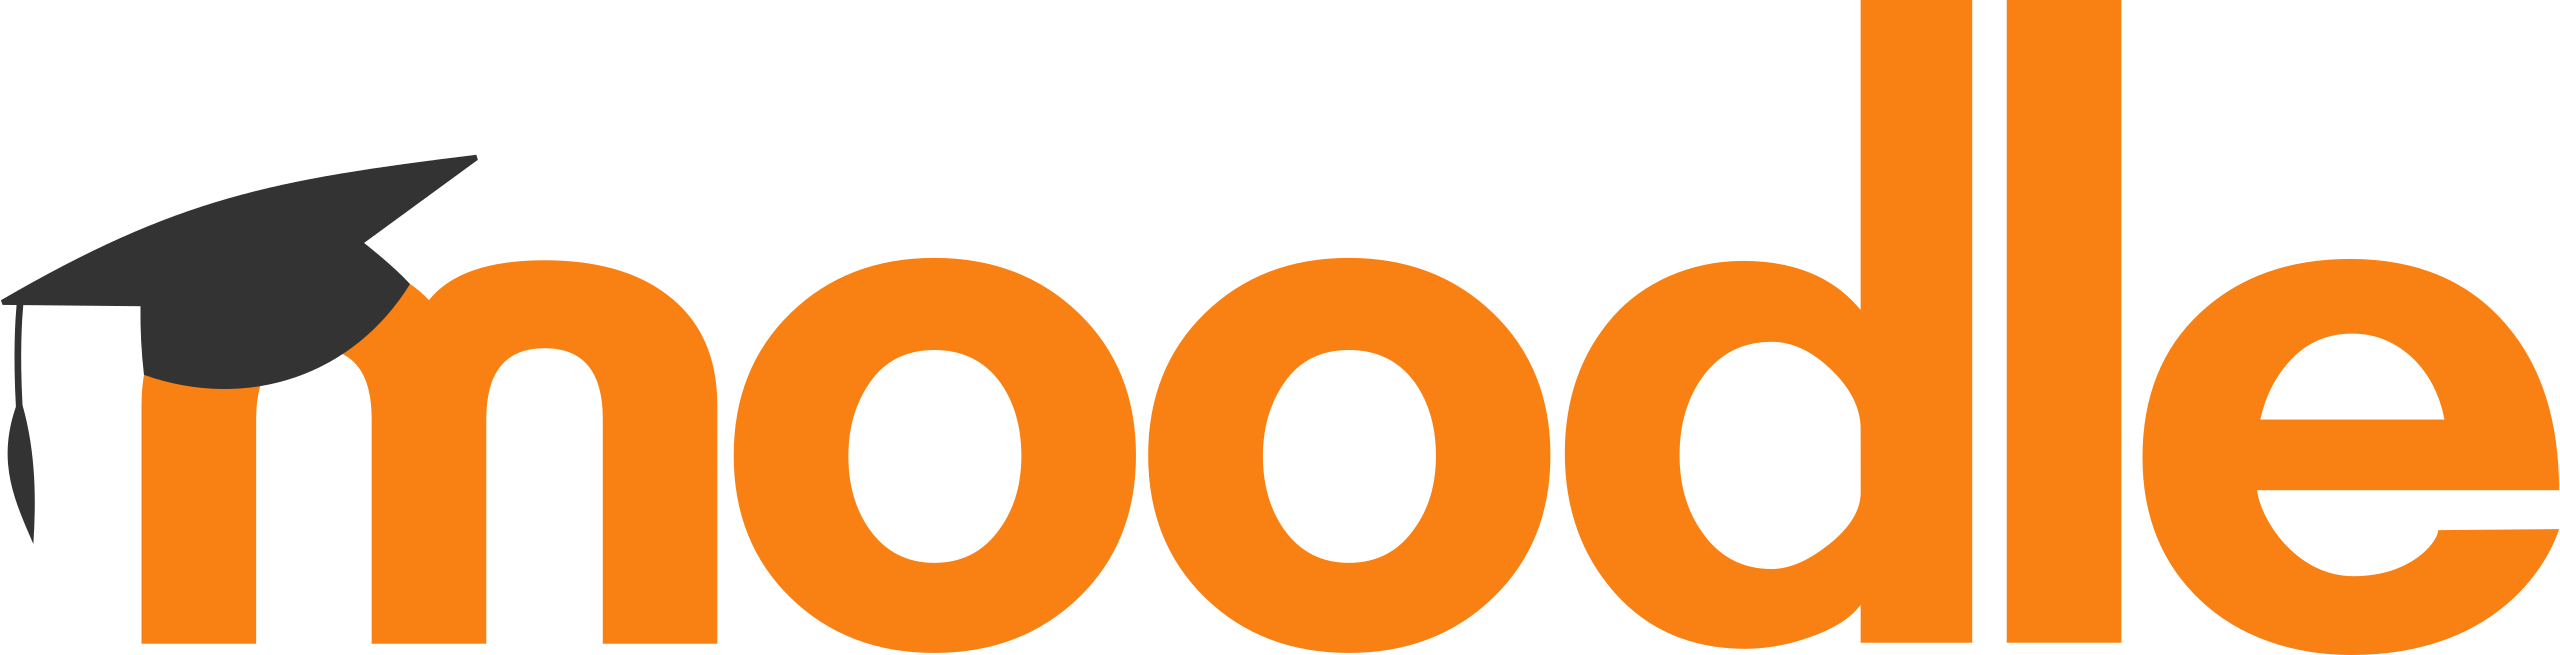 2560px-Moodle-logo.svg.png